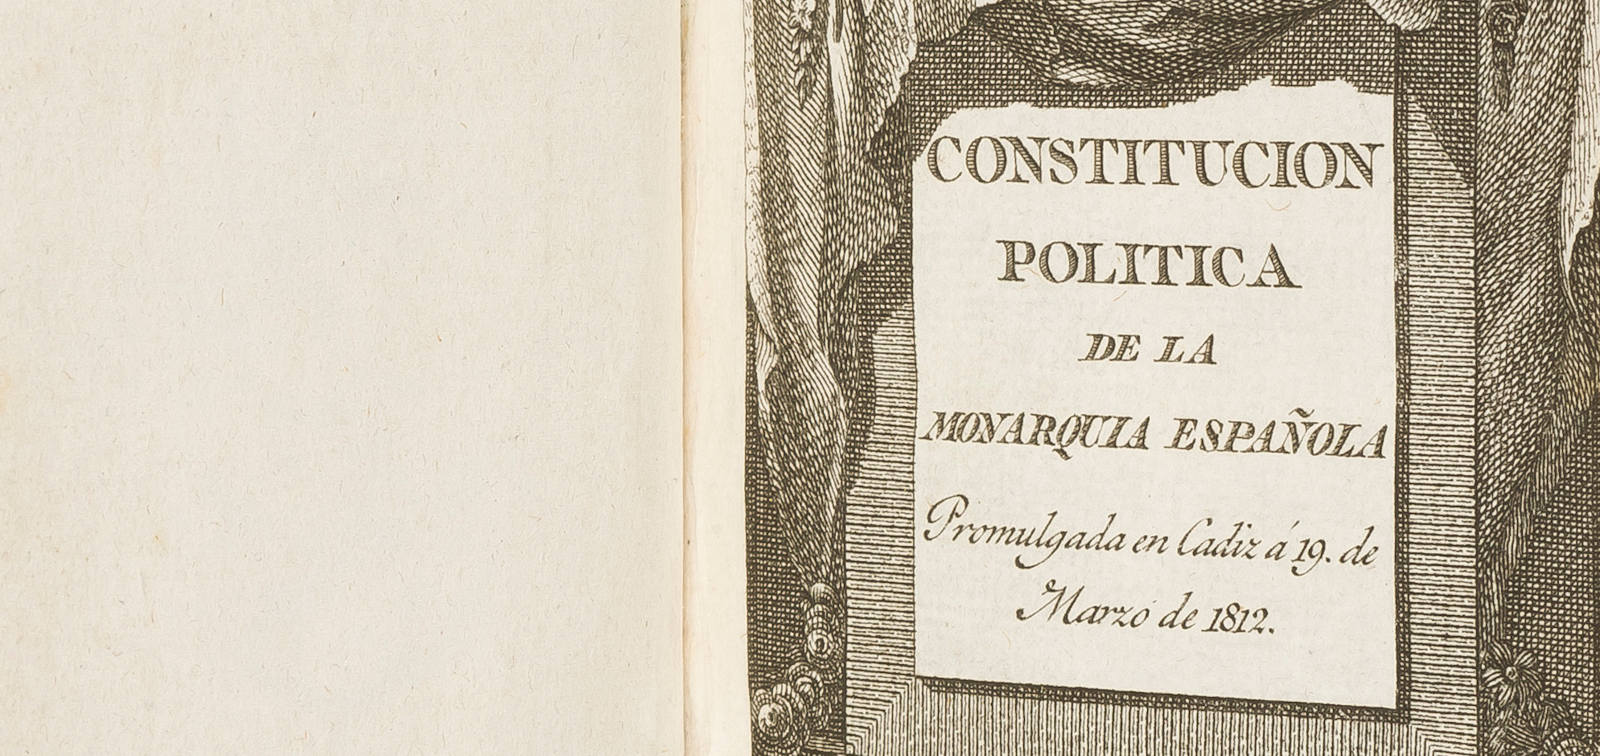 45 aniversario de nuestra Constitución Española! – IES Goya